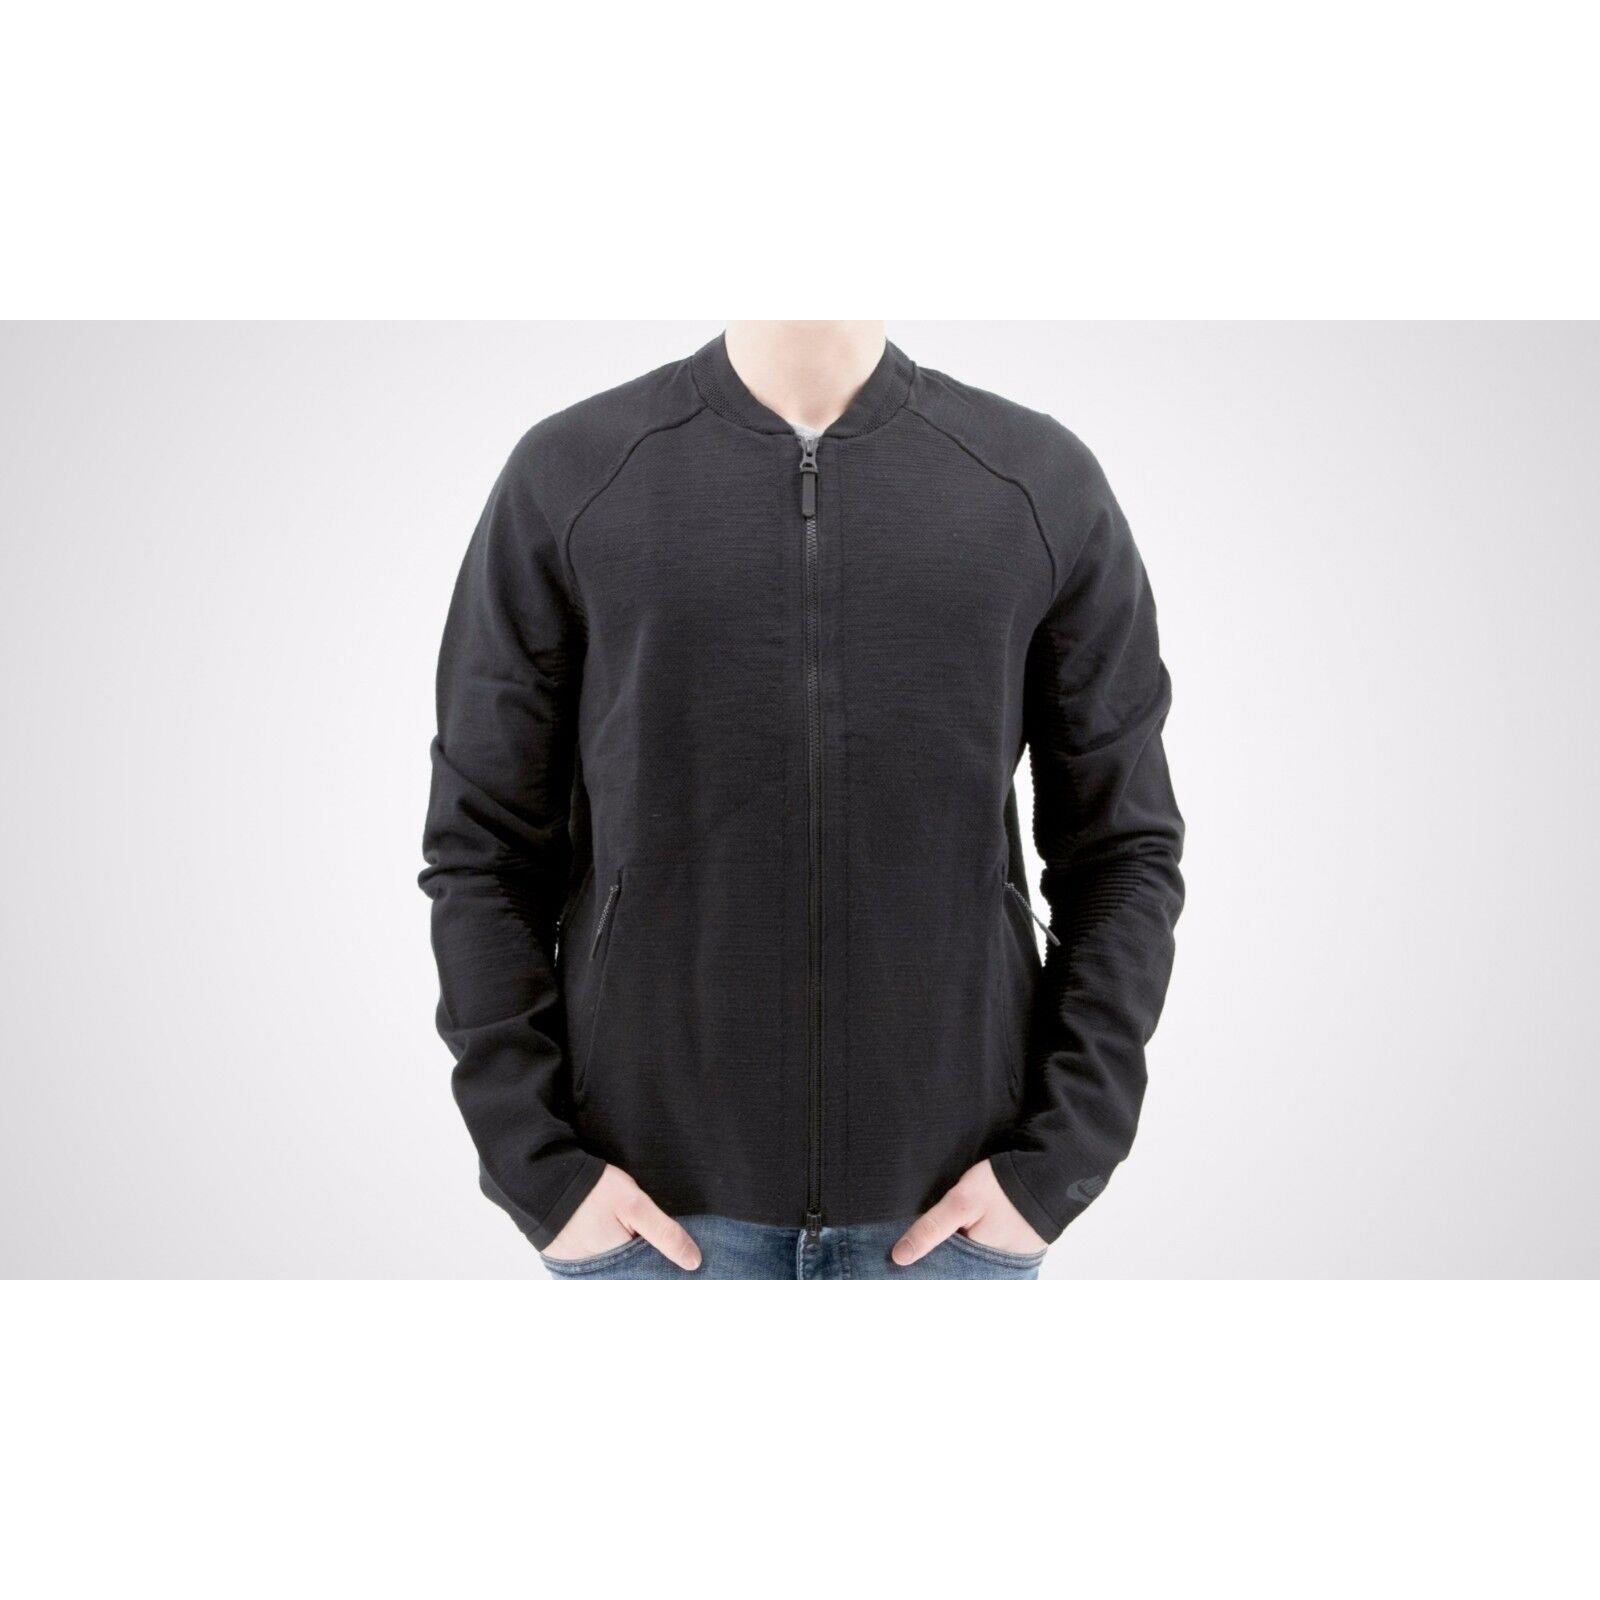 Nike Tech Knit Jacket Sz L Black 832178 010 Retail